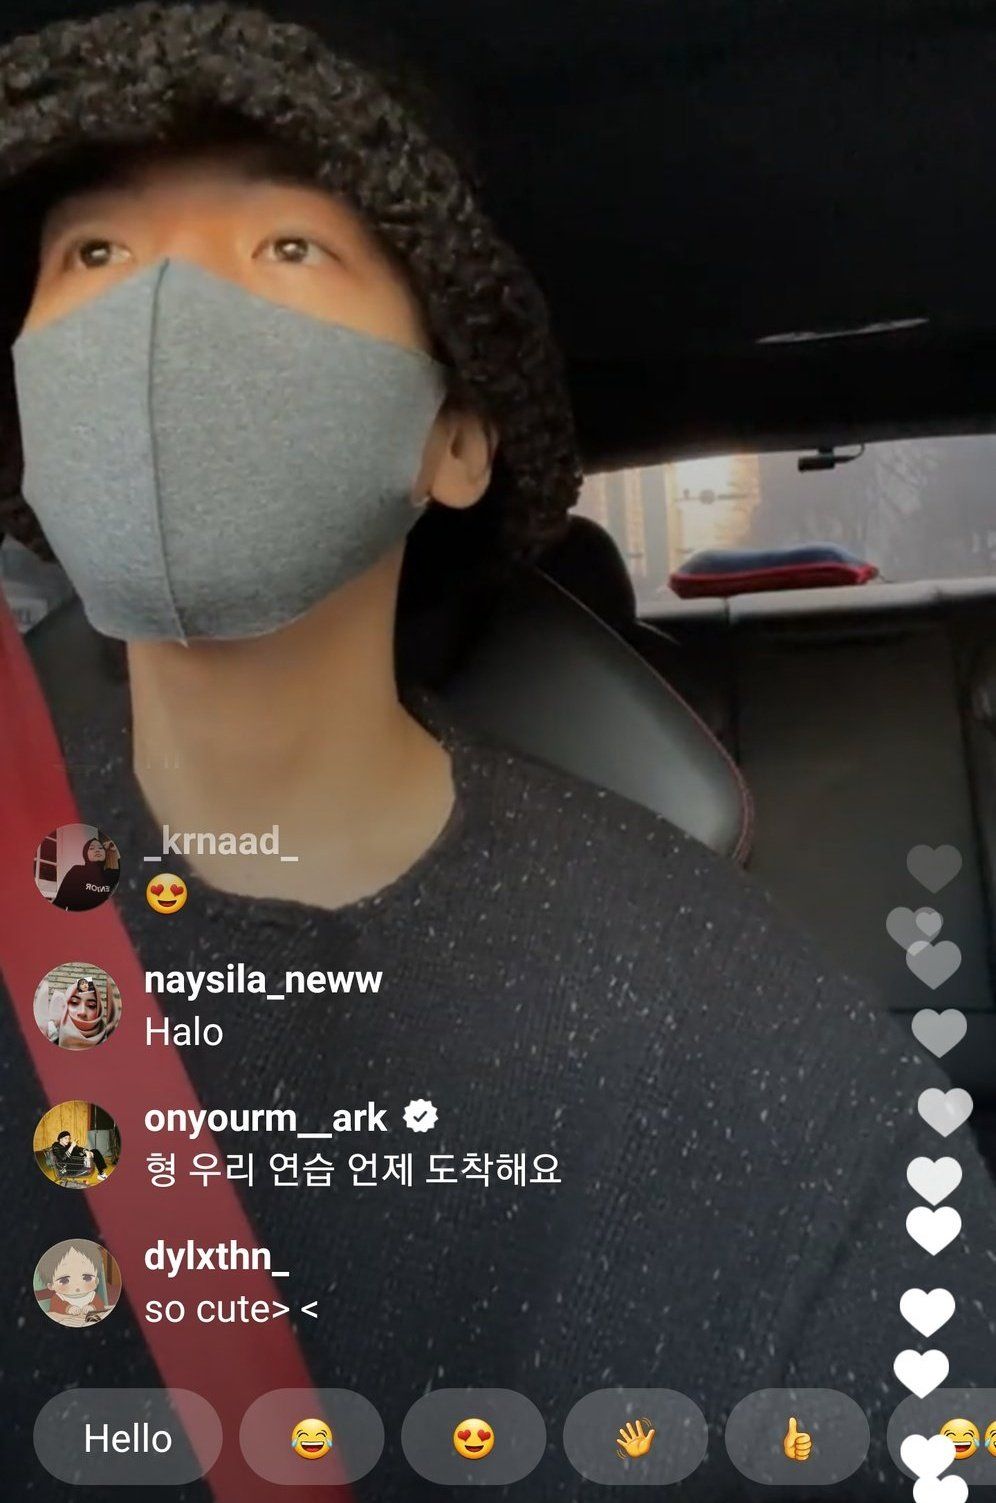 Mark memberikan komentar saat Baekhyun melakukan Instagram Live.